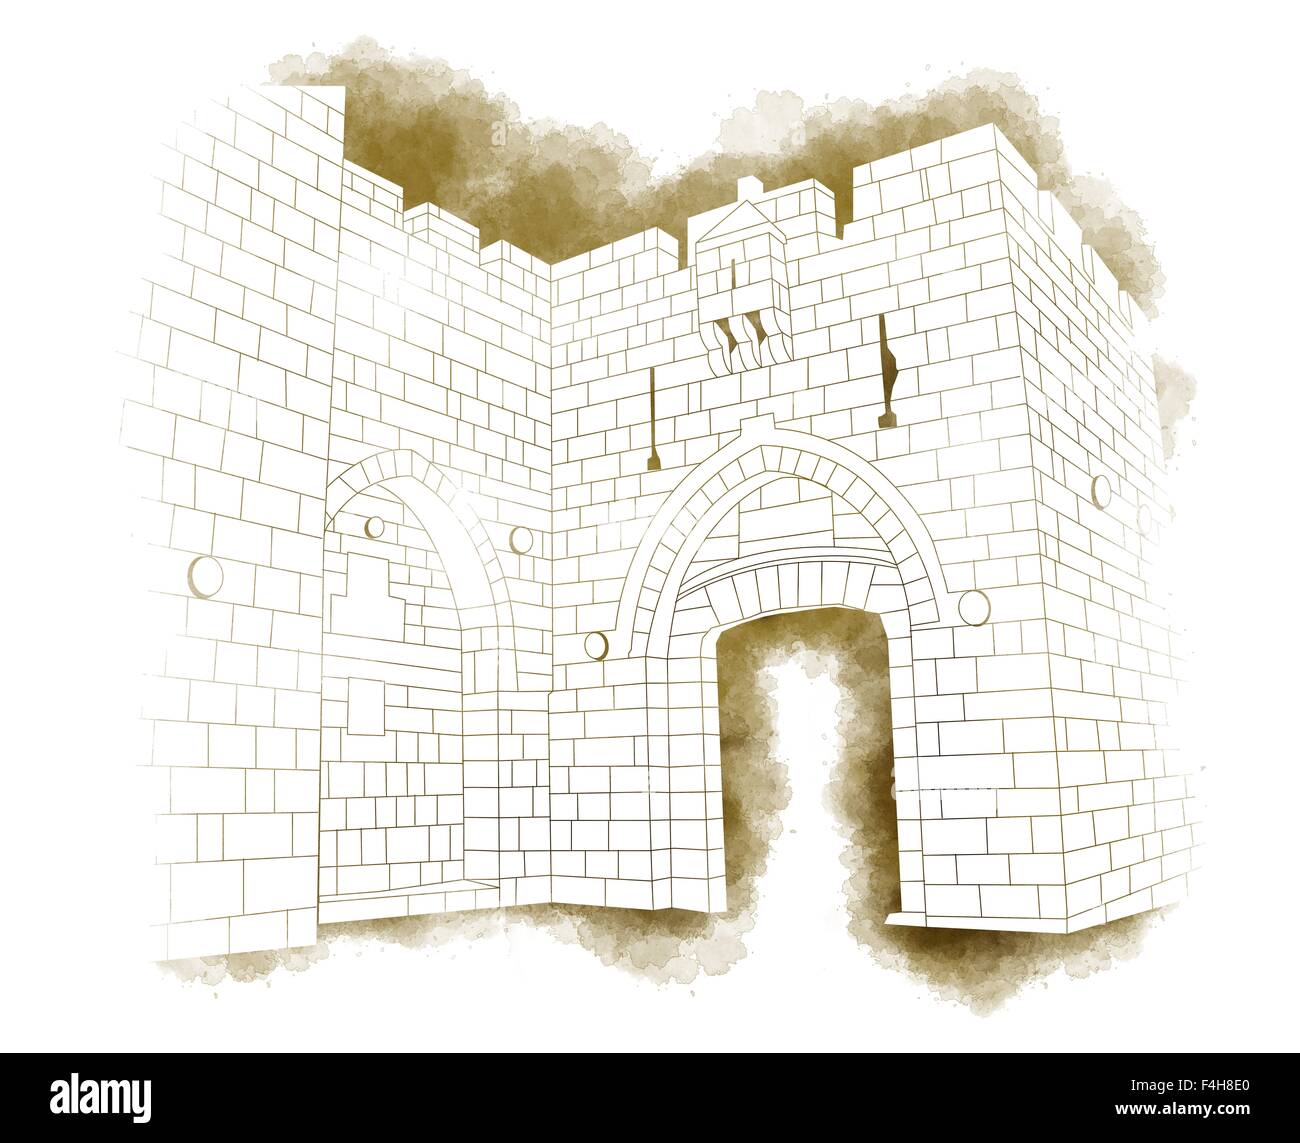 Illustrazione della Porta di Jaffa nella città vecchia di Gerusalemme, Israele Foto Stock